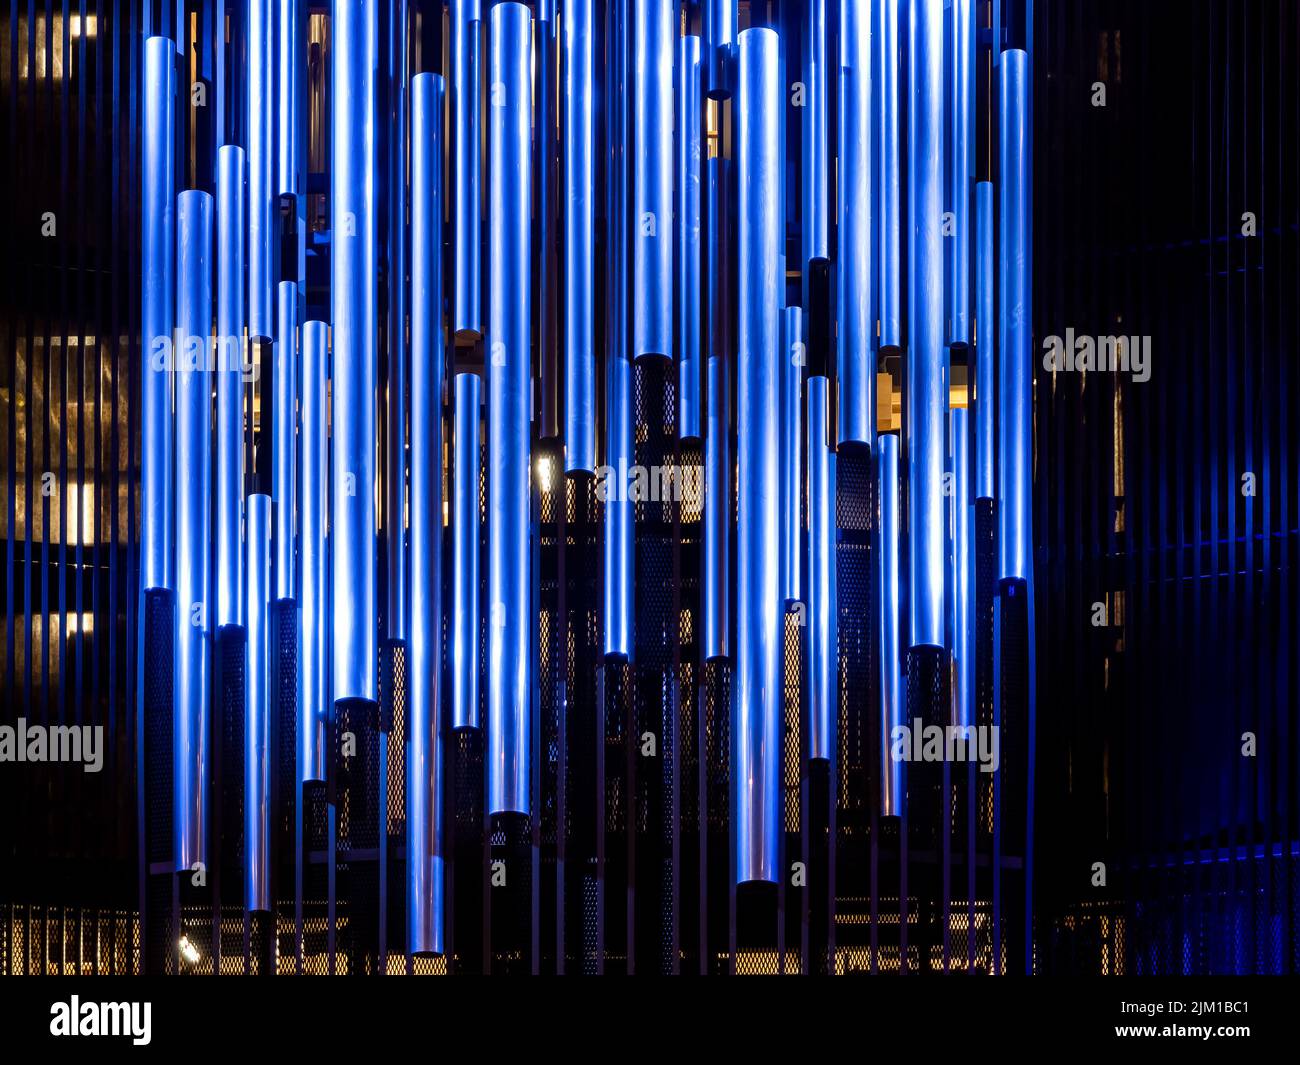 Pfeifenorgel in der Orgelhalle einer Philharmonie. Stahlrohre der Pfeifenorgel in der zeitgenössischen philharmonie Stockfoto